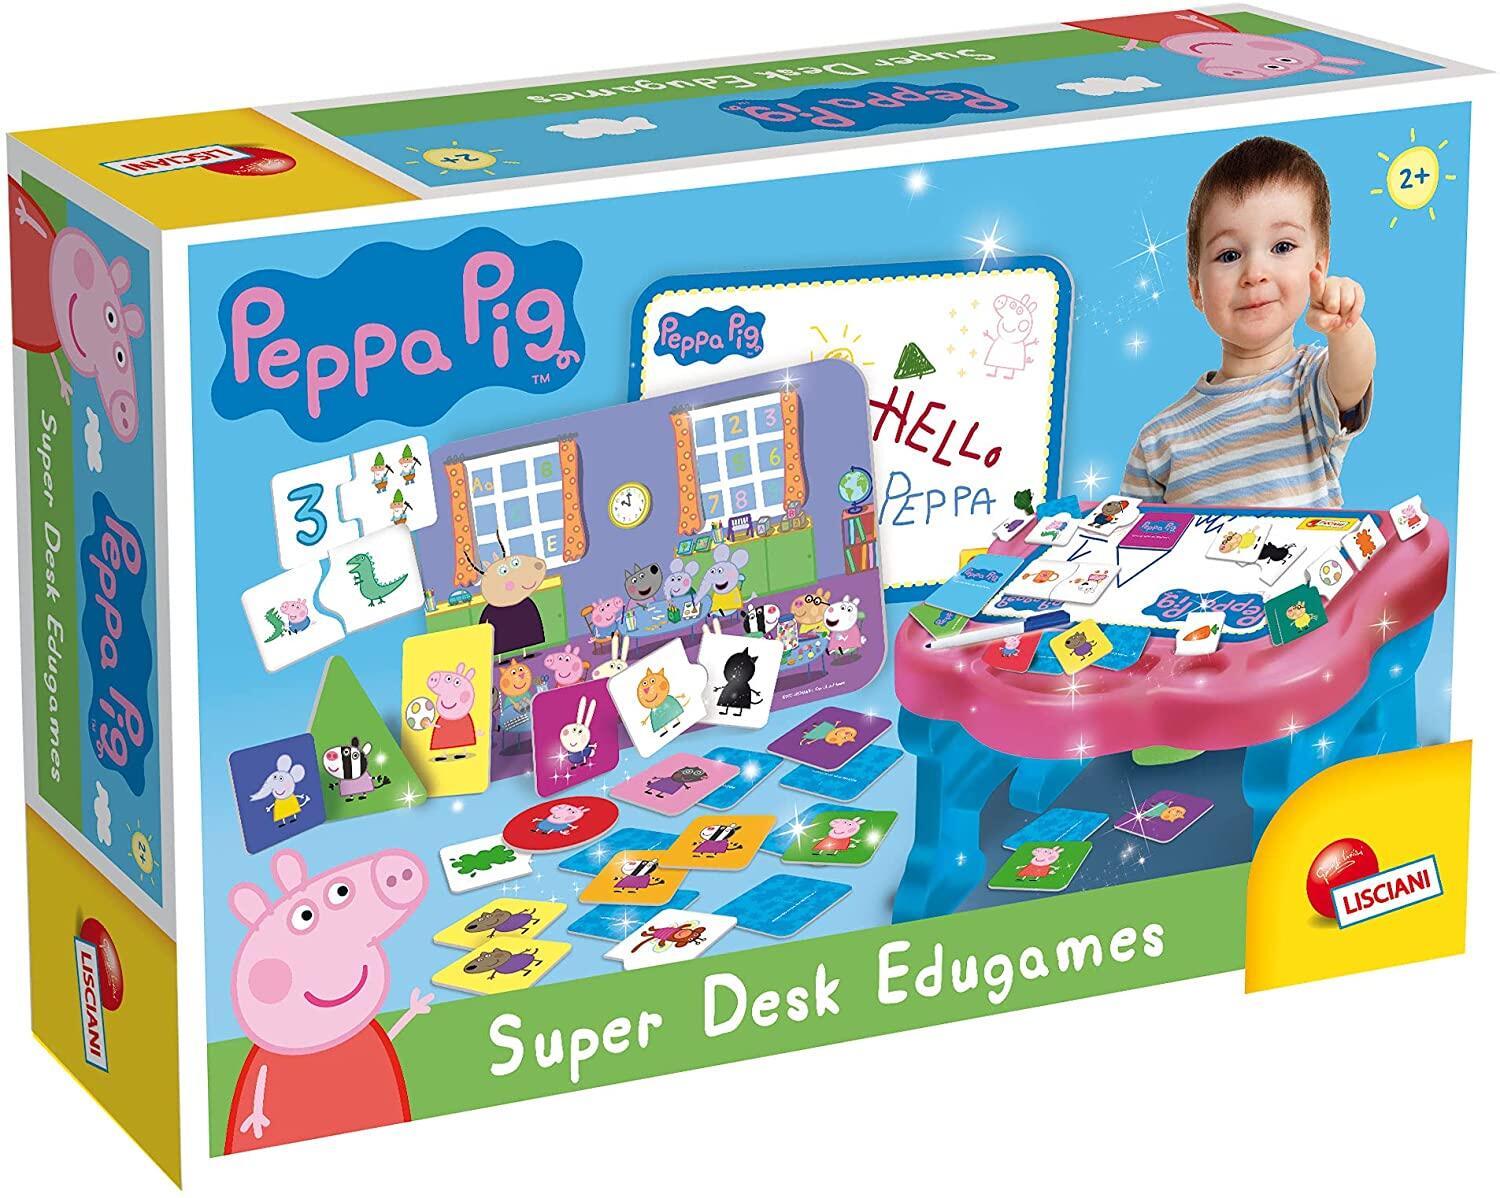 Masuta cu activitati Peppa Pig PlayLearn Toys